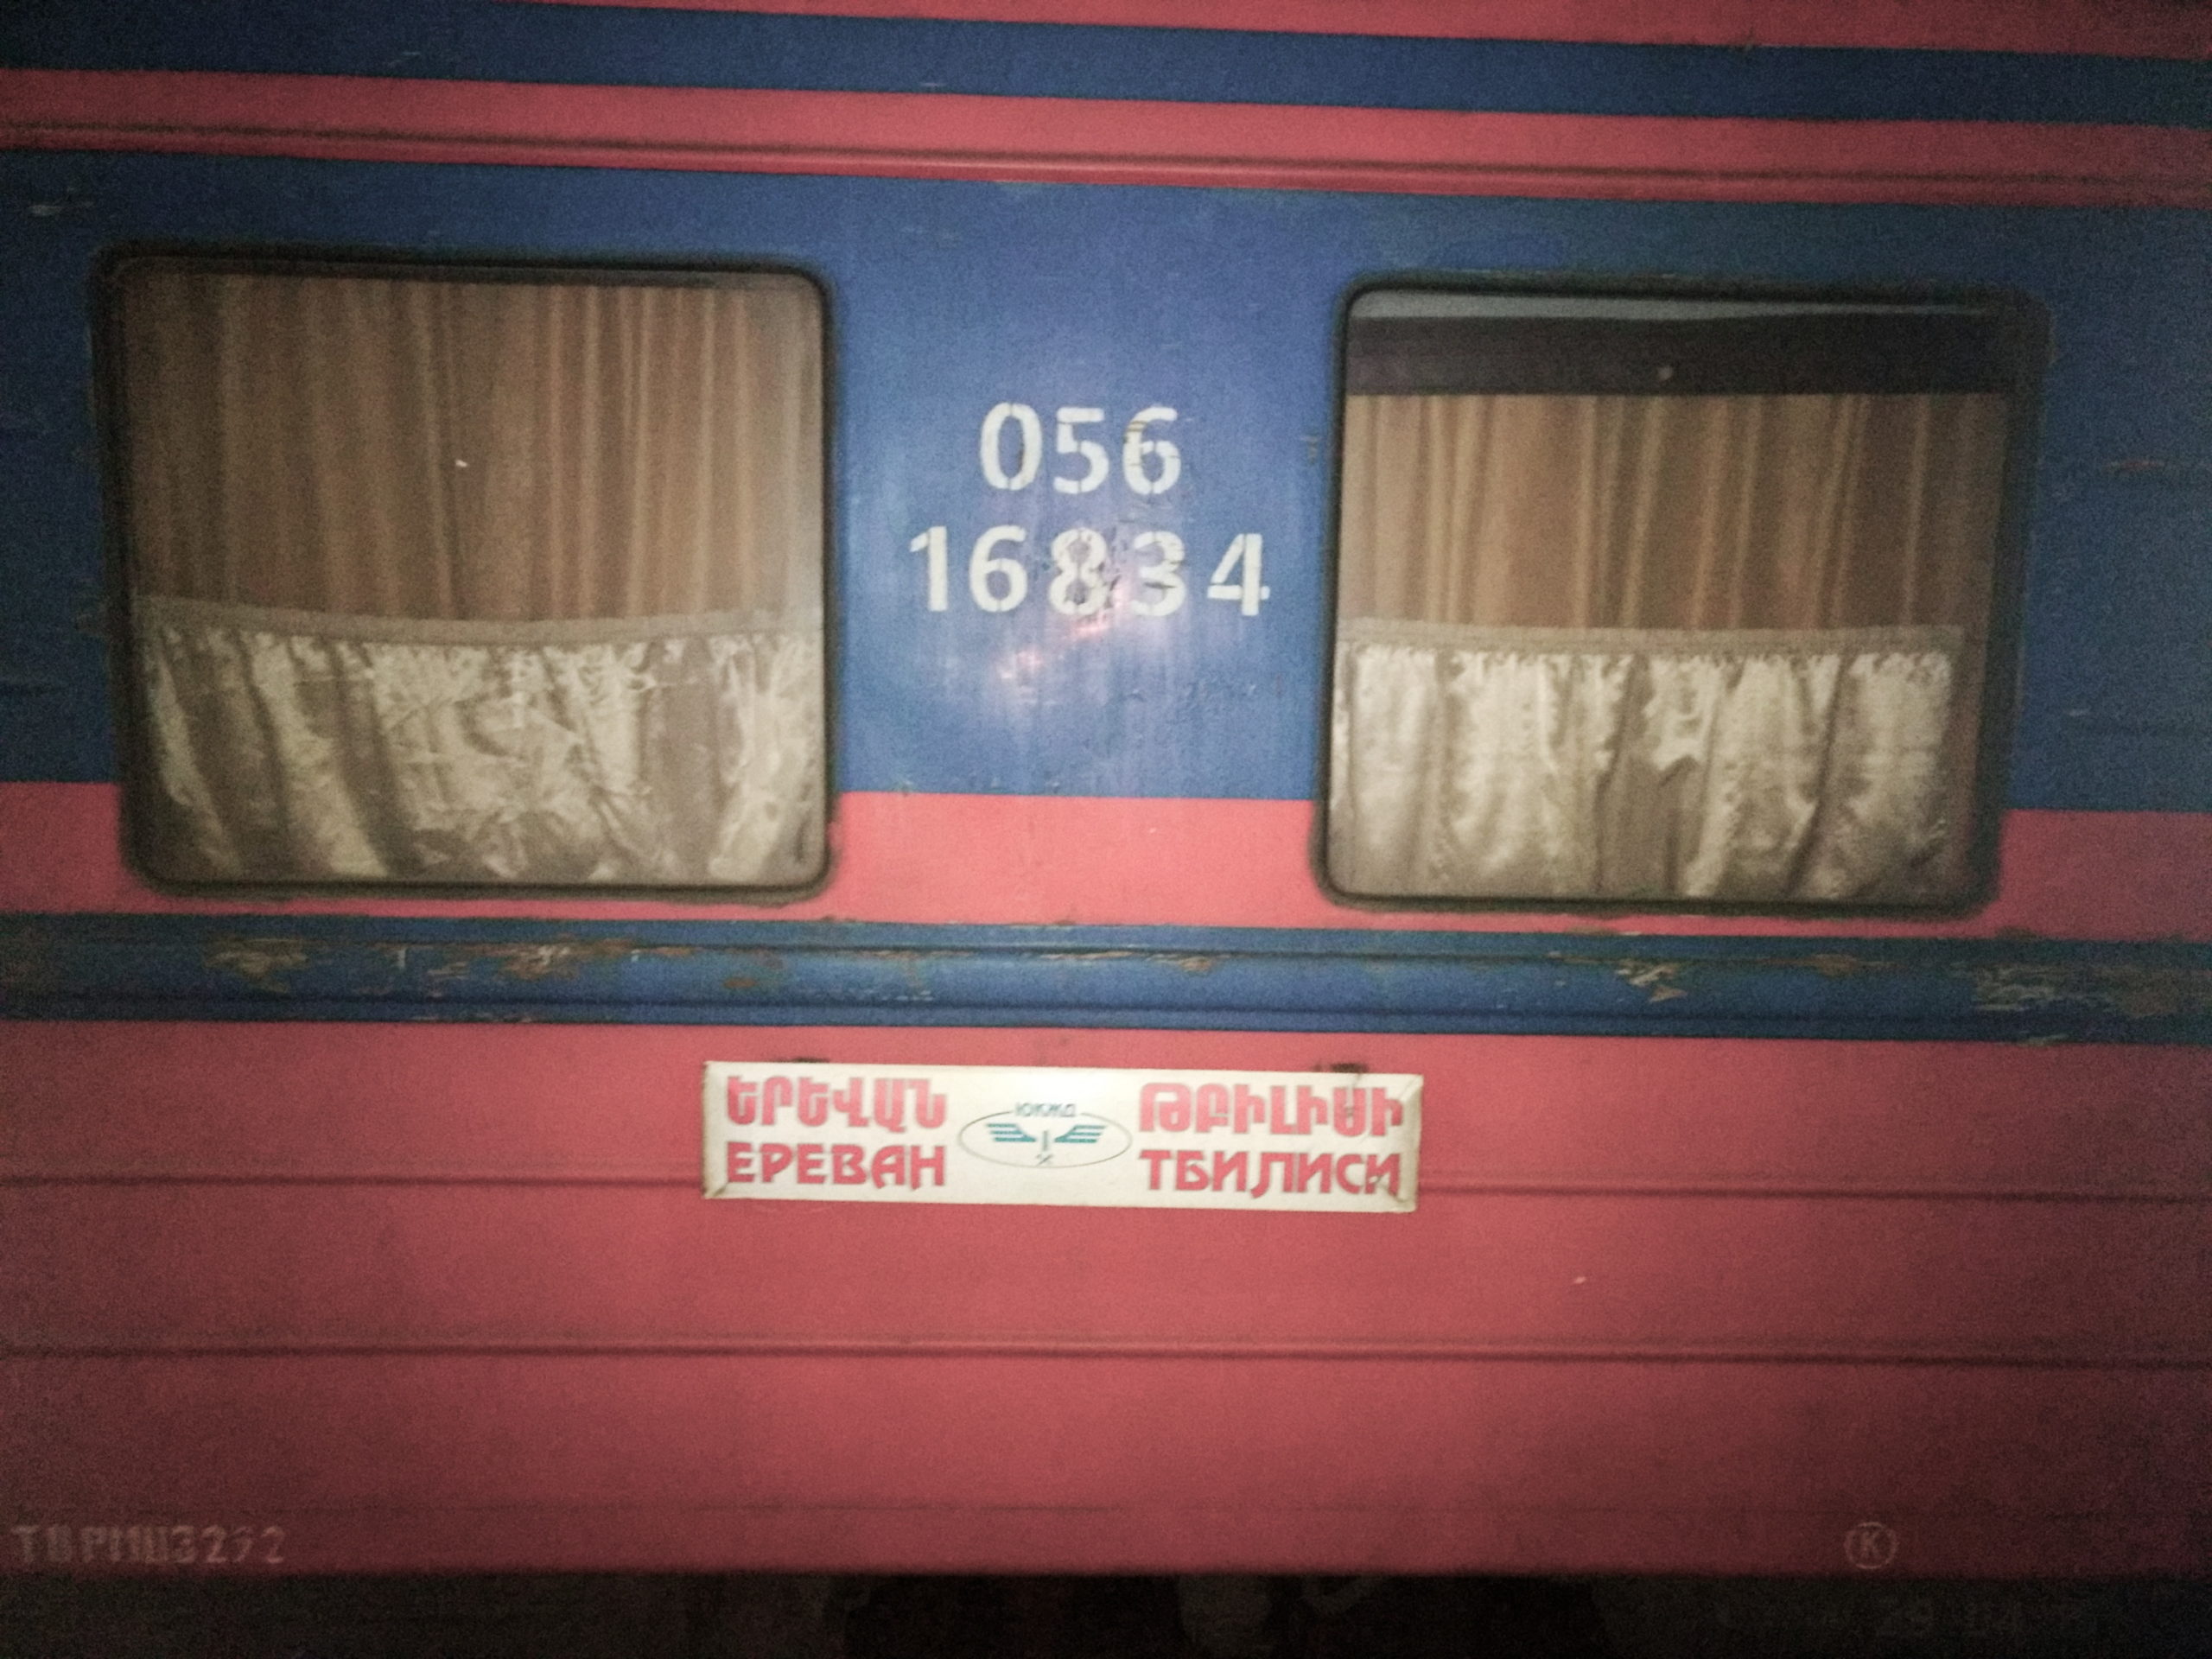 Vagón de tren de 1a clase de Ereván a Tiflis